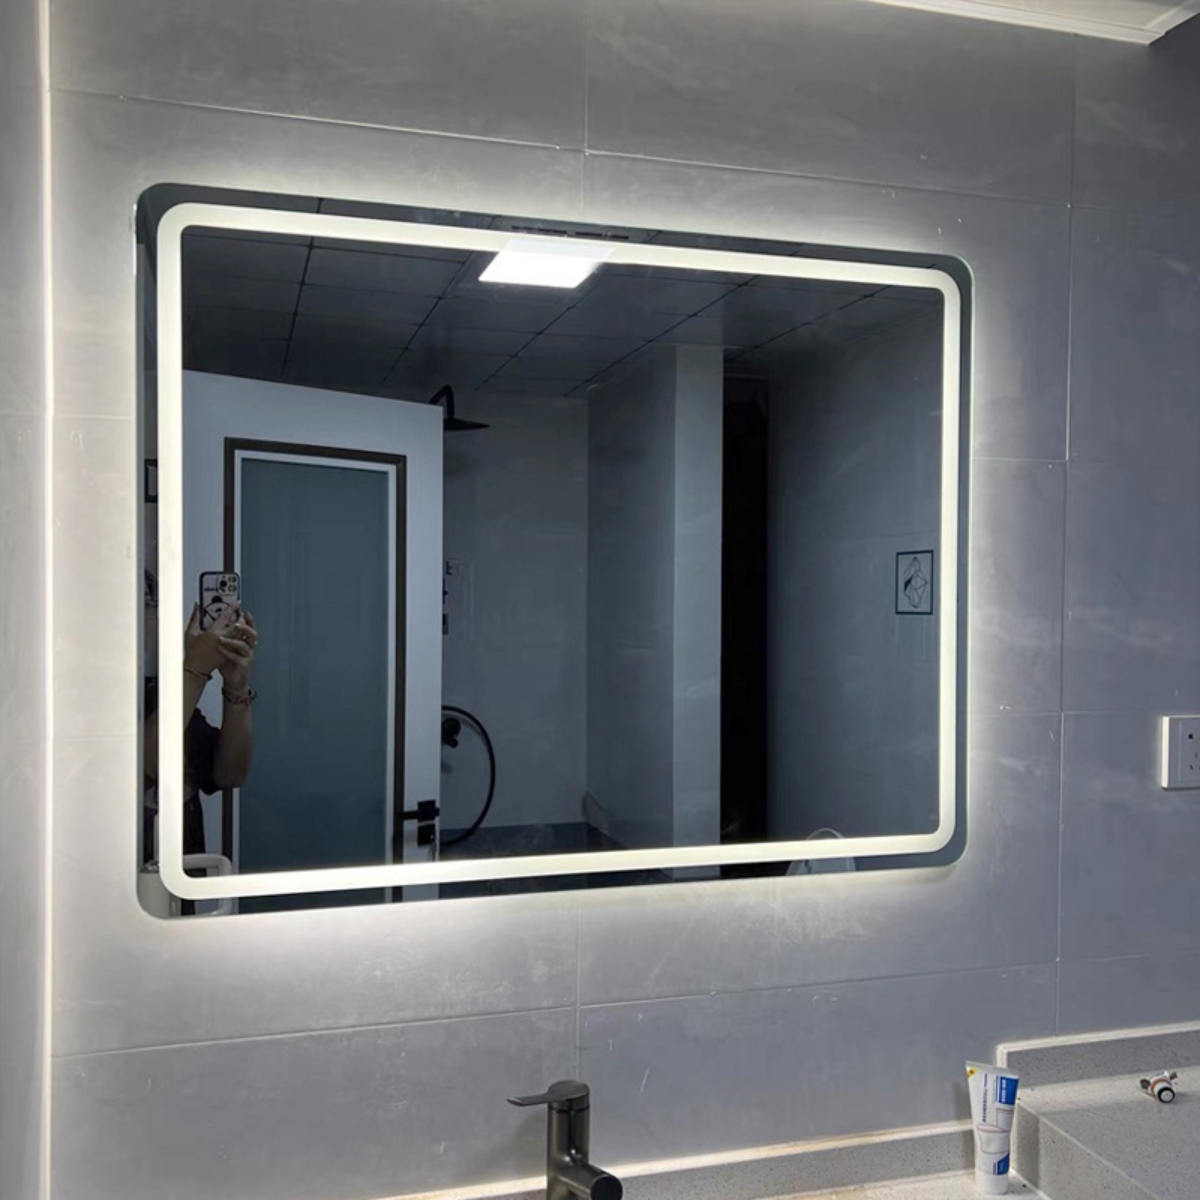 Smart dimmbar, Entfrosten Bathroom BYTELIKE Dreifarbiges Dreifarbig LED Dual-Touch-Schalter, elektronisches Licht, Spiegel, Entfoggen Mirror - temperaturgesteuertes